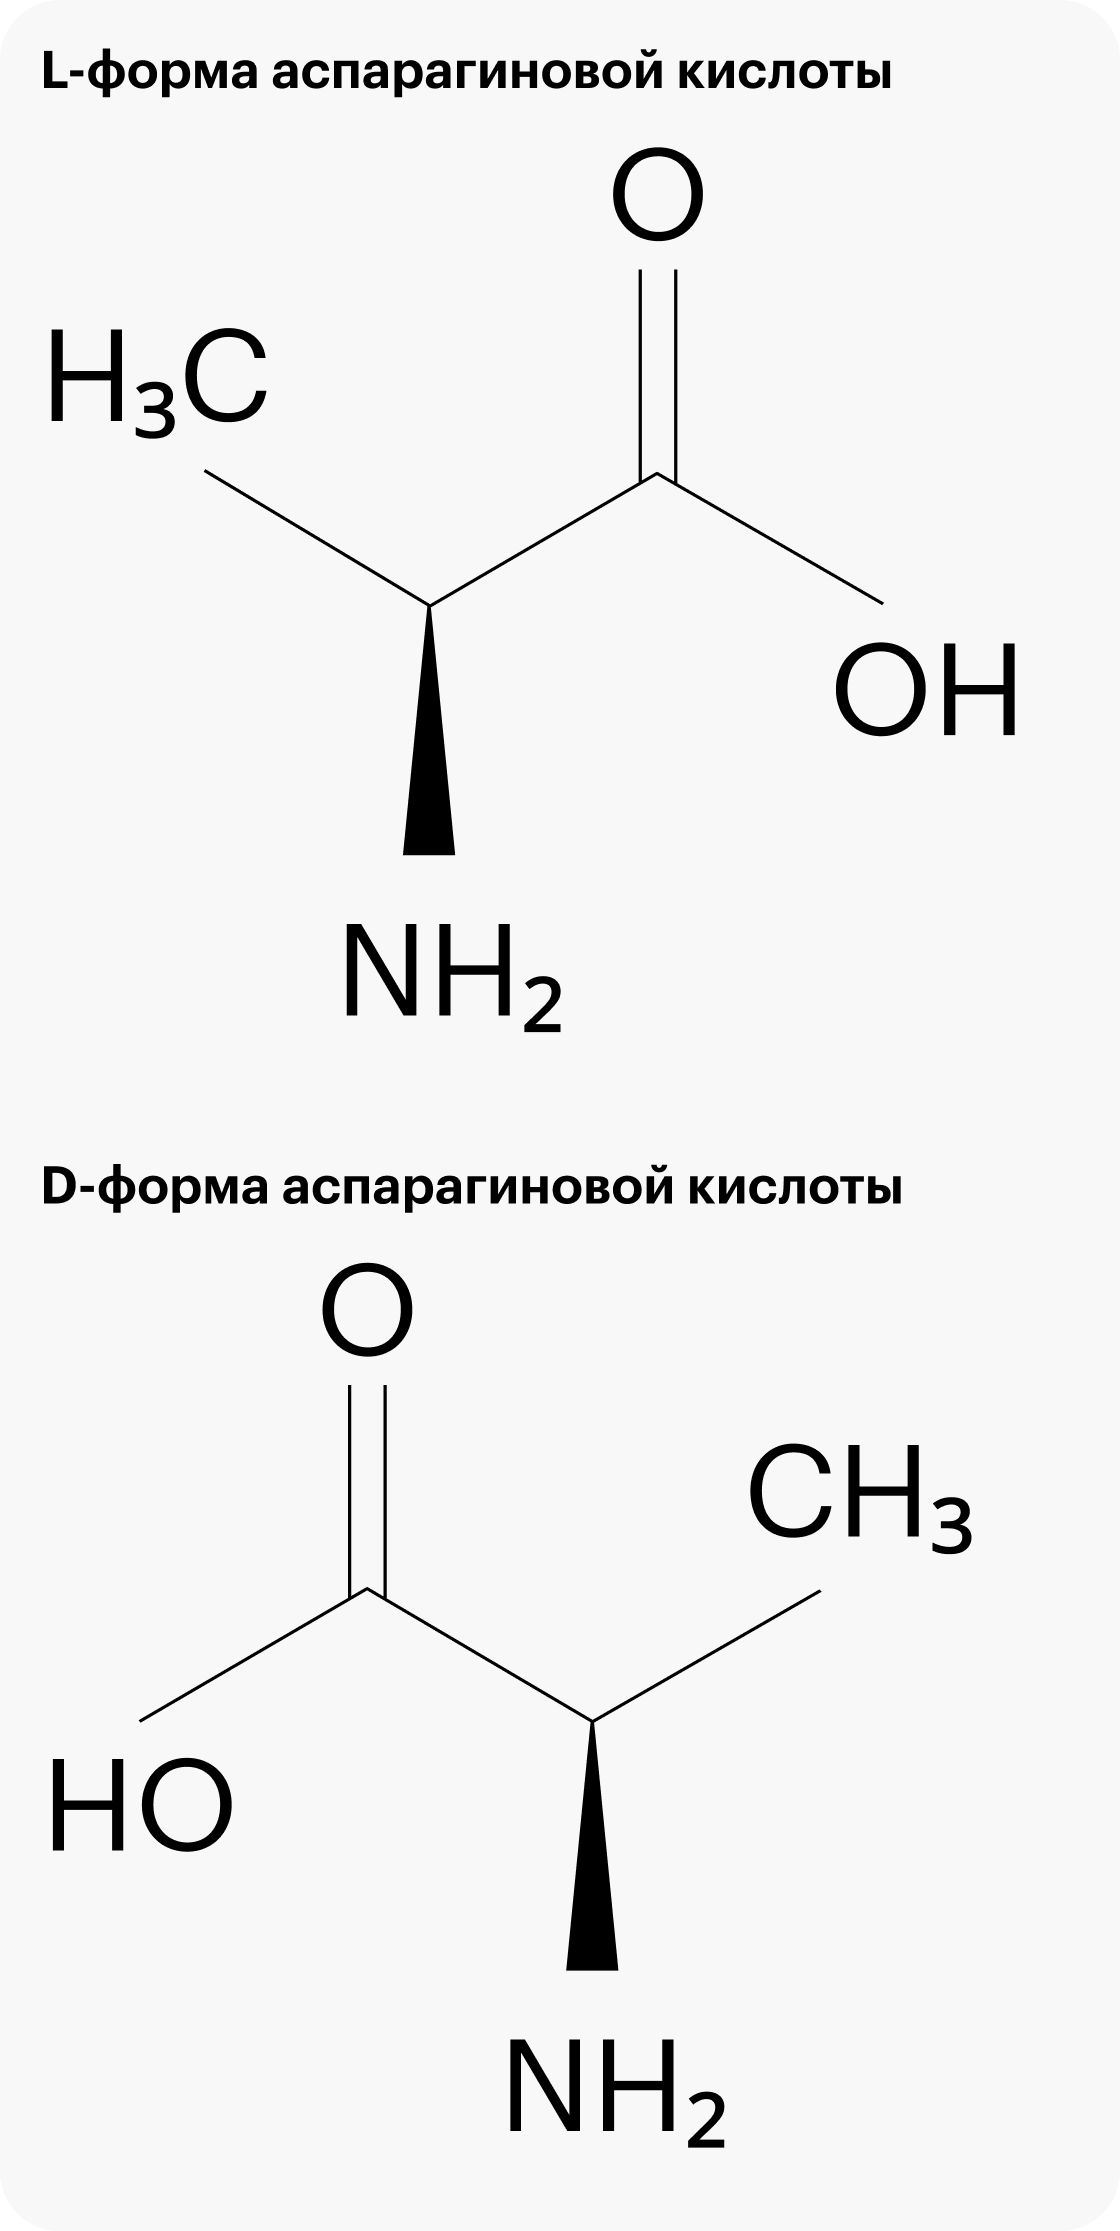 У L- и D-форм аспарагиновой кислоты одинаковая формула, но разные свойства